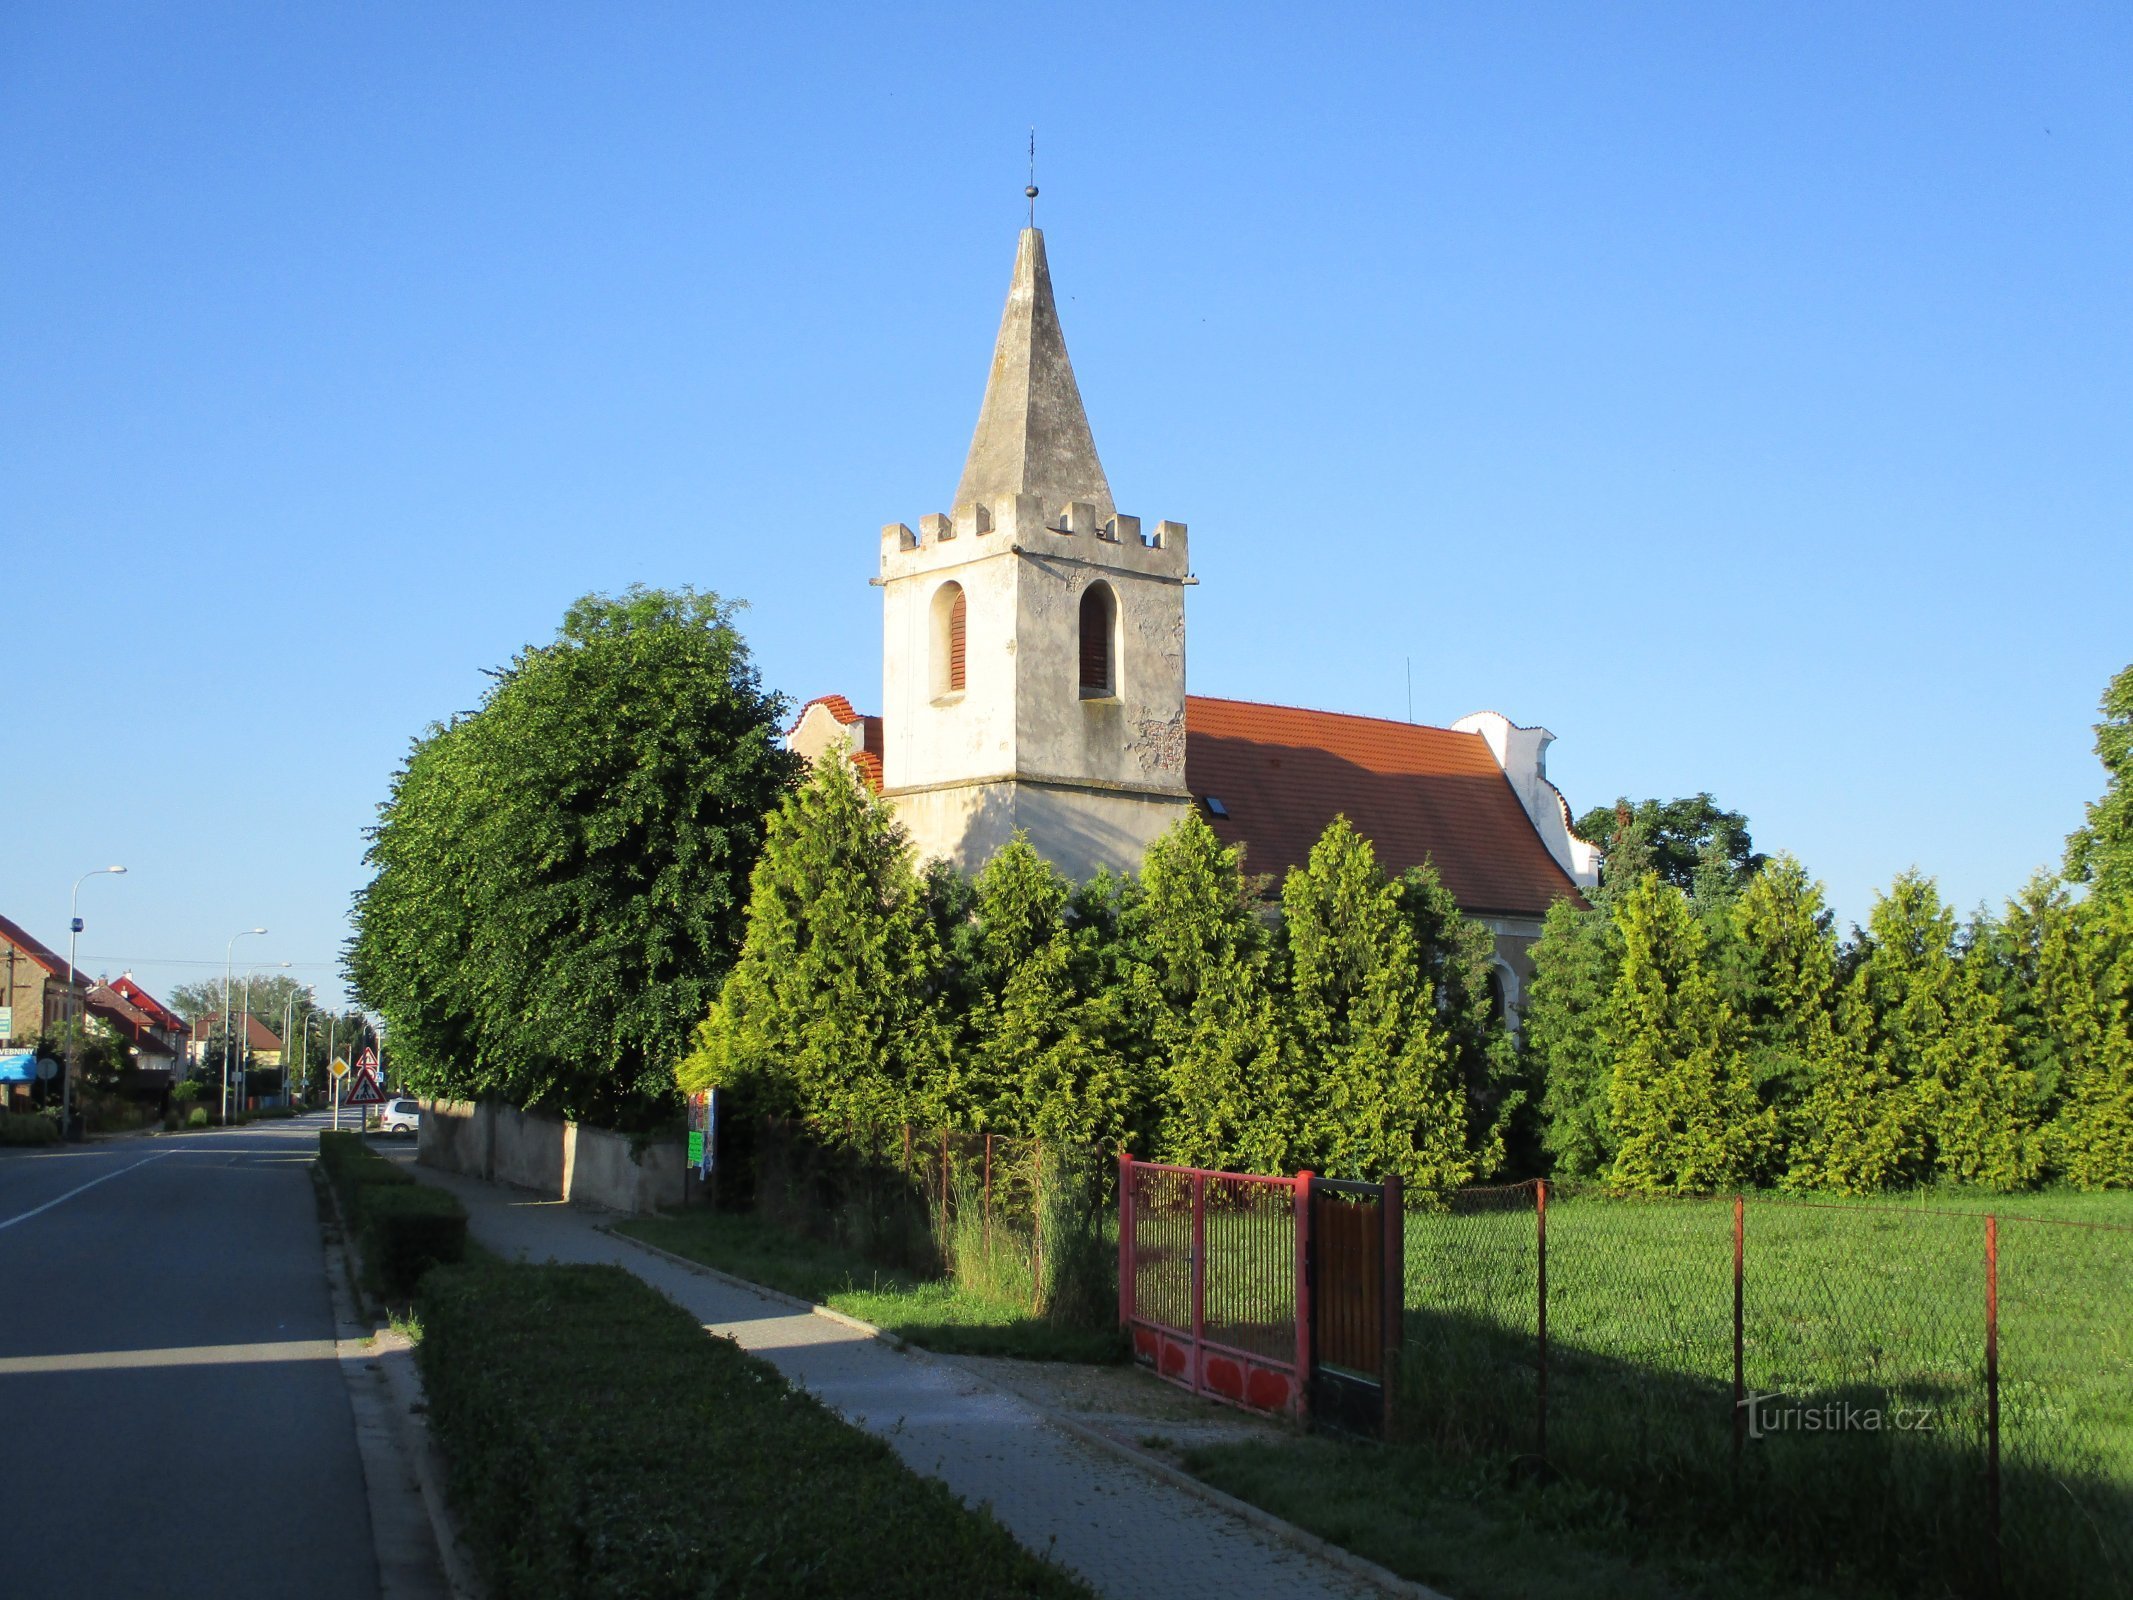 Kostel sv. Vavřince (Opatovice nad Labem, 9.6.2019)